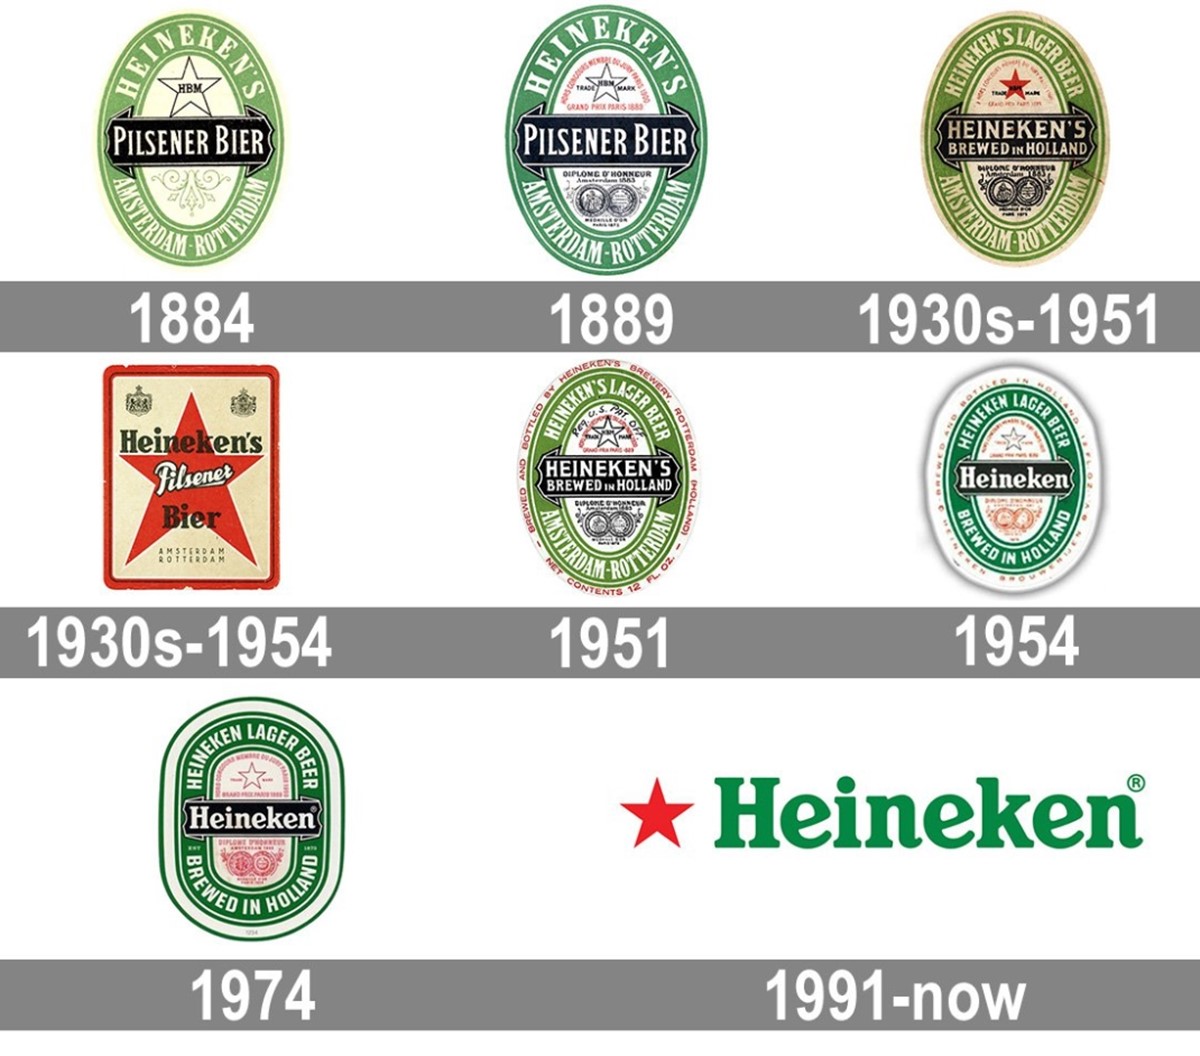 Heineken brand identity